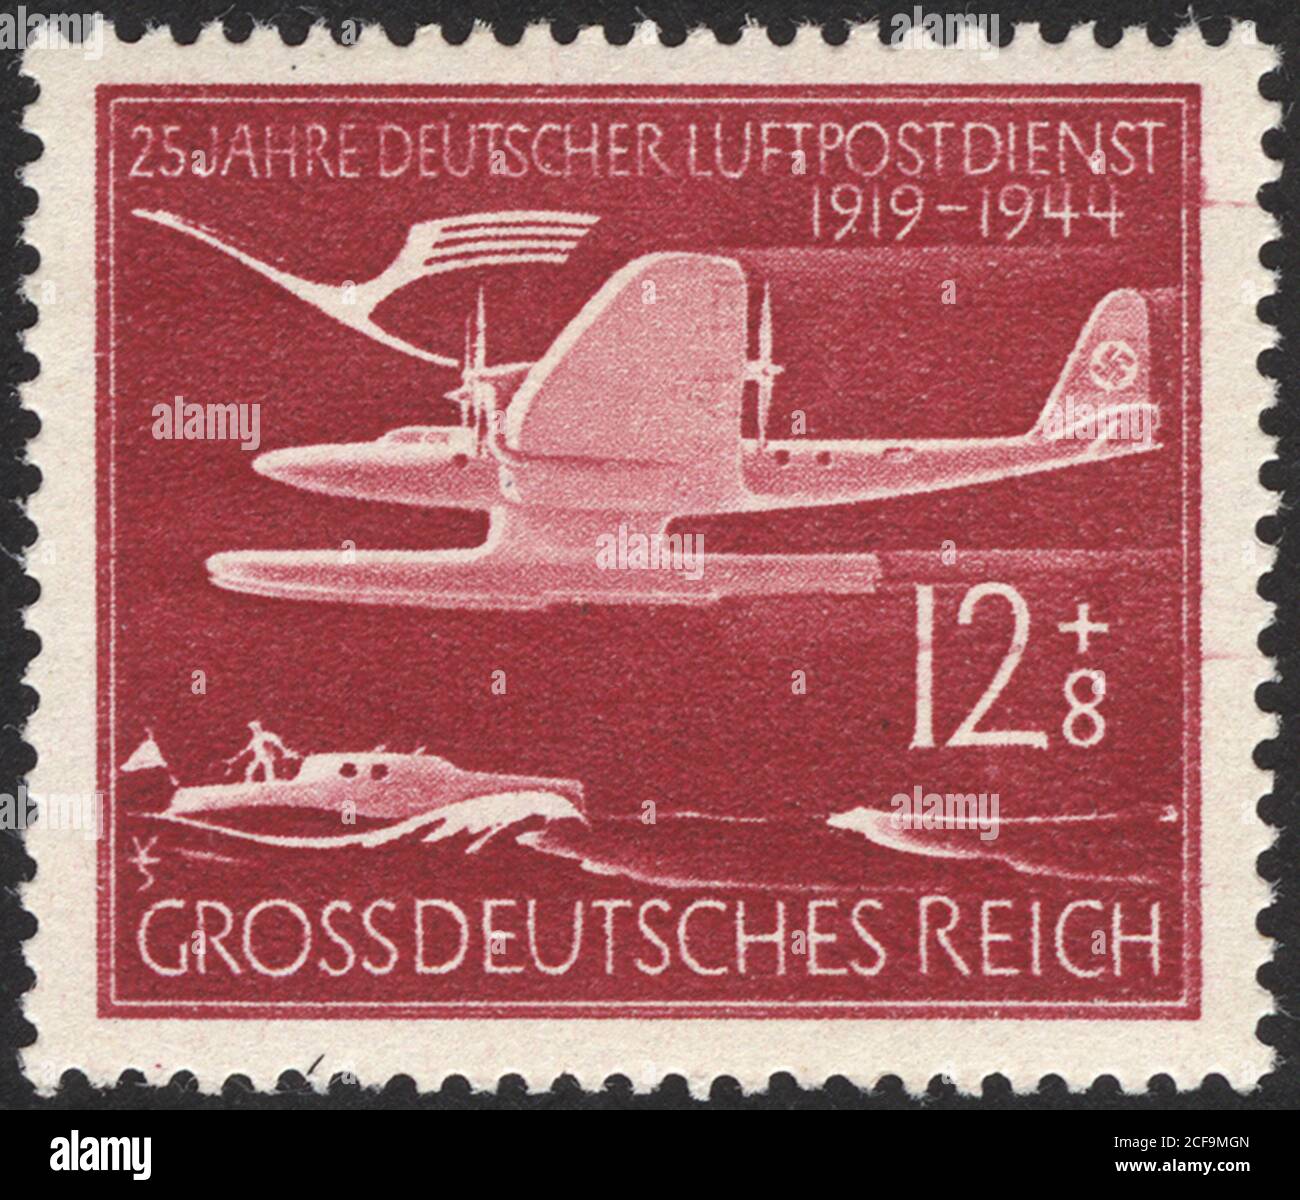 Postage stamps of the Deutsche Demokratische Republik. Stamp printed in the Deutsche Demokratische Republik. Stock Photo